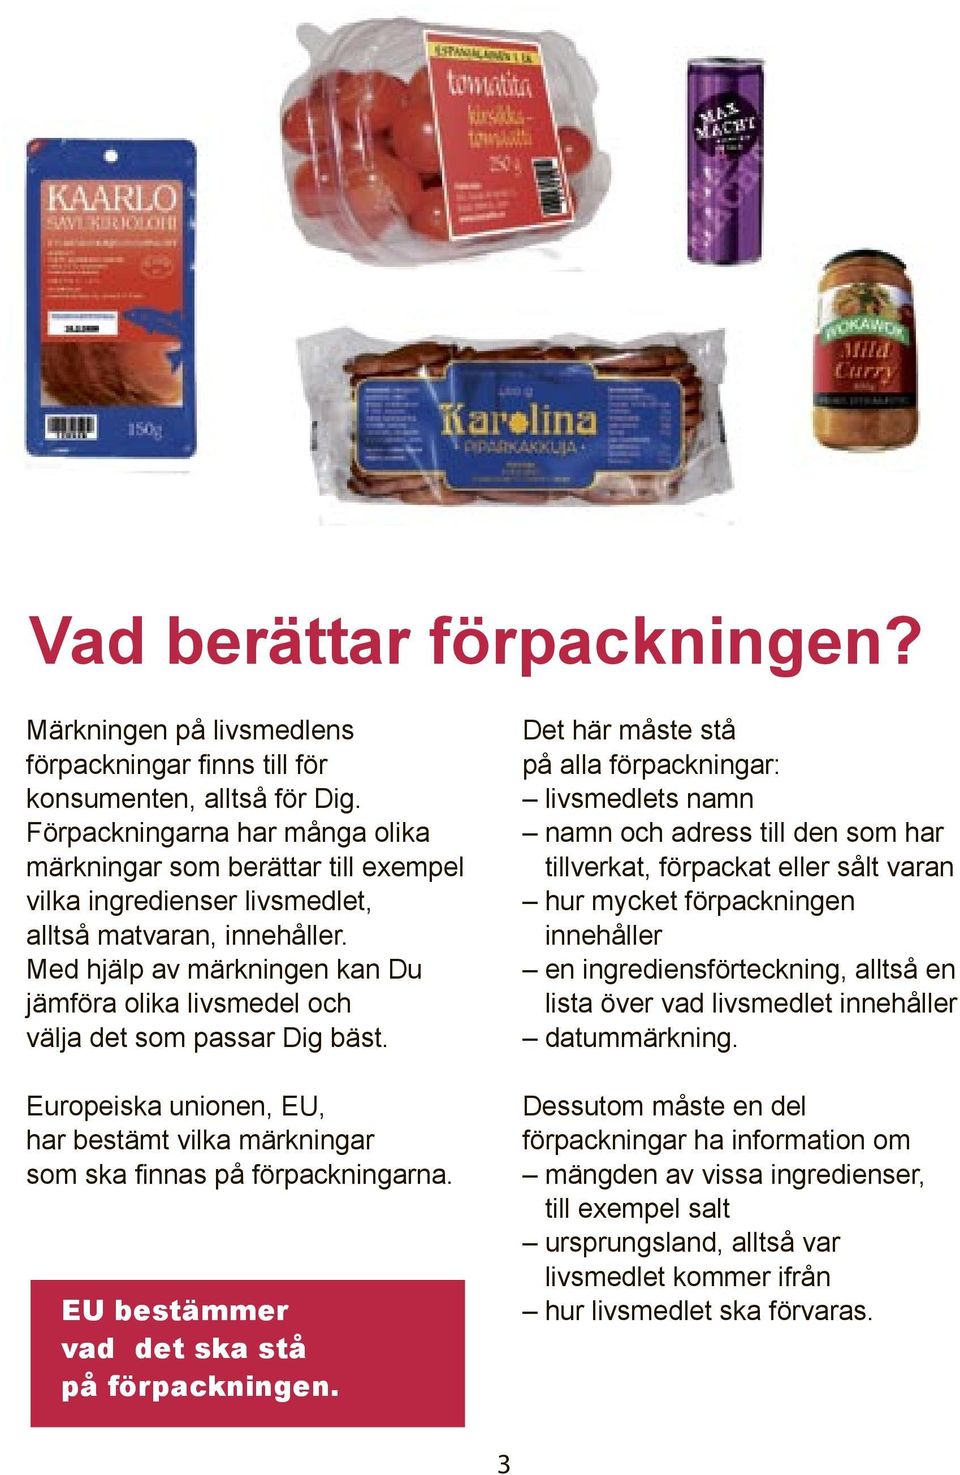 Med hjälp av märkningen kan Du jämföra olika livsmedel och välja det som passar Dig bäst. Europeiska unionen, EU, har bestämt vilka märkningar som ska finnas på förpackningarna.